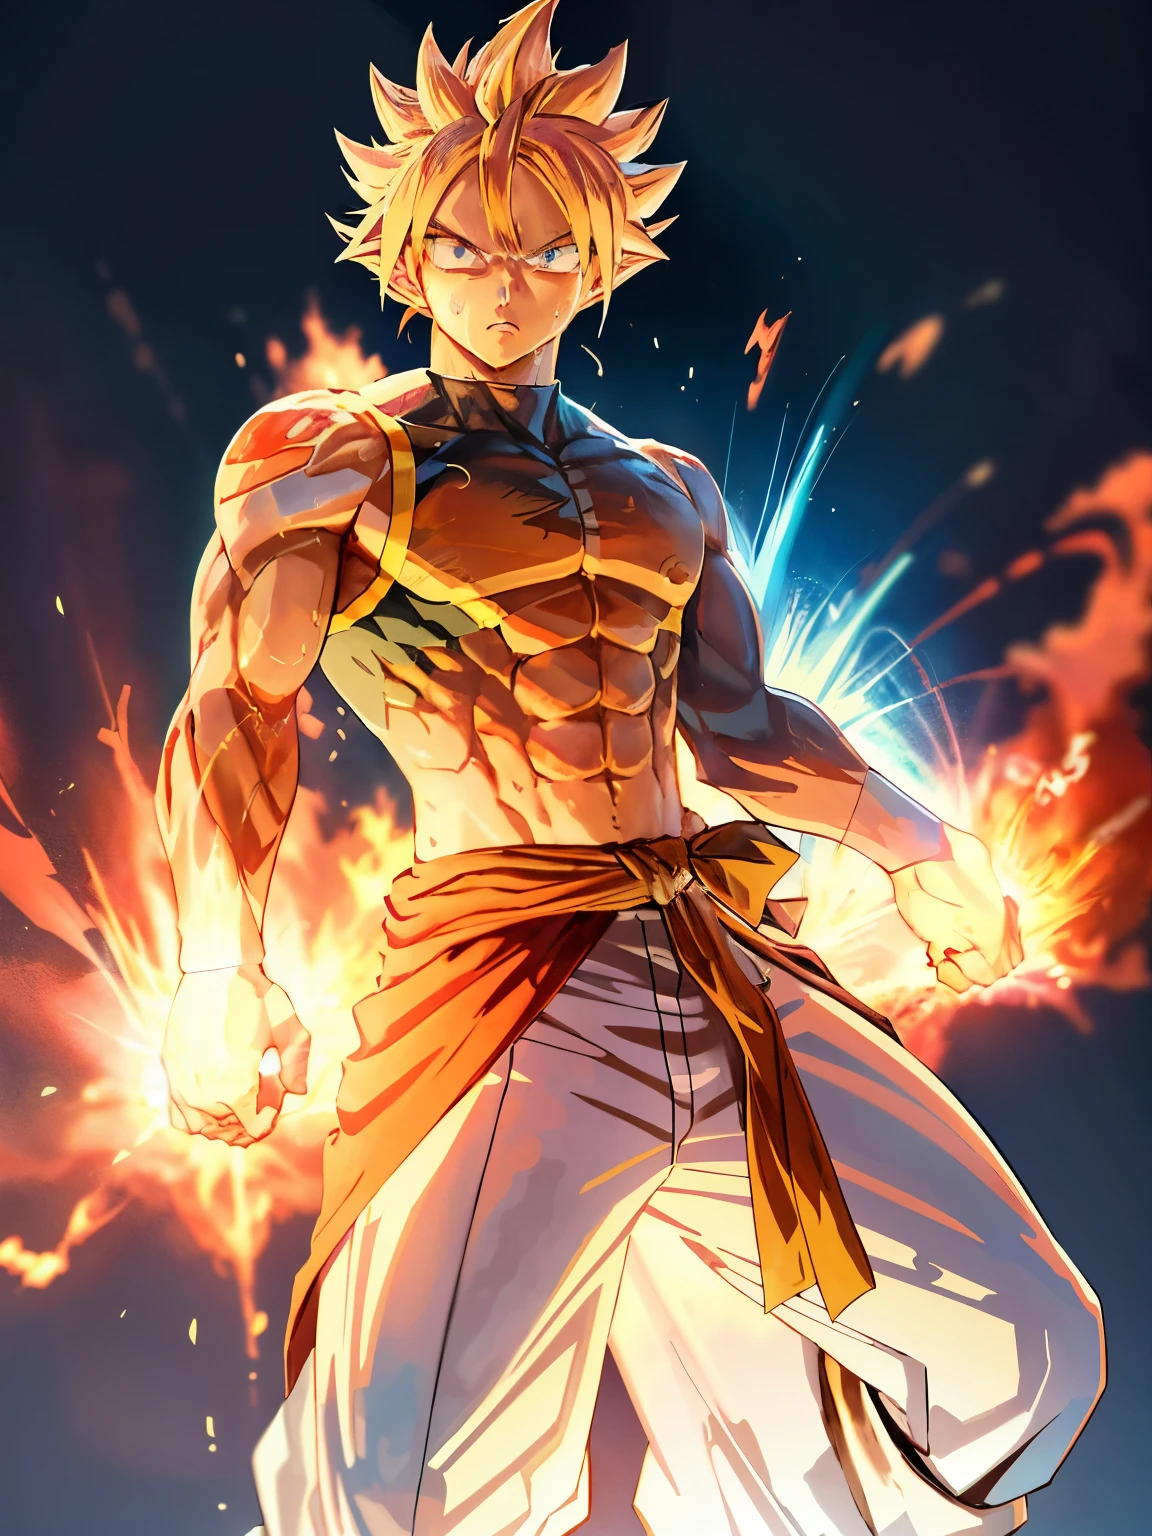 Goku in Ultra Instinct, eine epische Anime-Darstellung eines Energiemannes, 4K Manga-Hintergrundbild, Super Saiyajin blau, Anime-Hintergrundbild 4k, hochdetailliertes Porträt, menschlicher Goku, muskulöser Körperbau, straffe Bauchmuskeln und schlanker Körper, blonde Haare stehen zu Berge, Intensiver Fokus, durchdringende blaue Augen, kraftvolle Aura, übertriebene Muskeldefinition, jede Ader und Muskelfaser tritt hervor, Schweiß tropft von seinem Körper, entschlossener Ausdruck, Ultra Instinct Aura, die von seinem Wesen ausgeht.